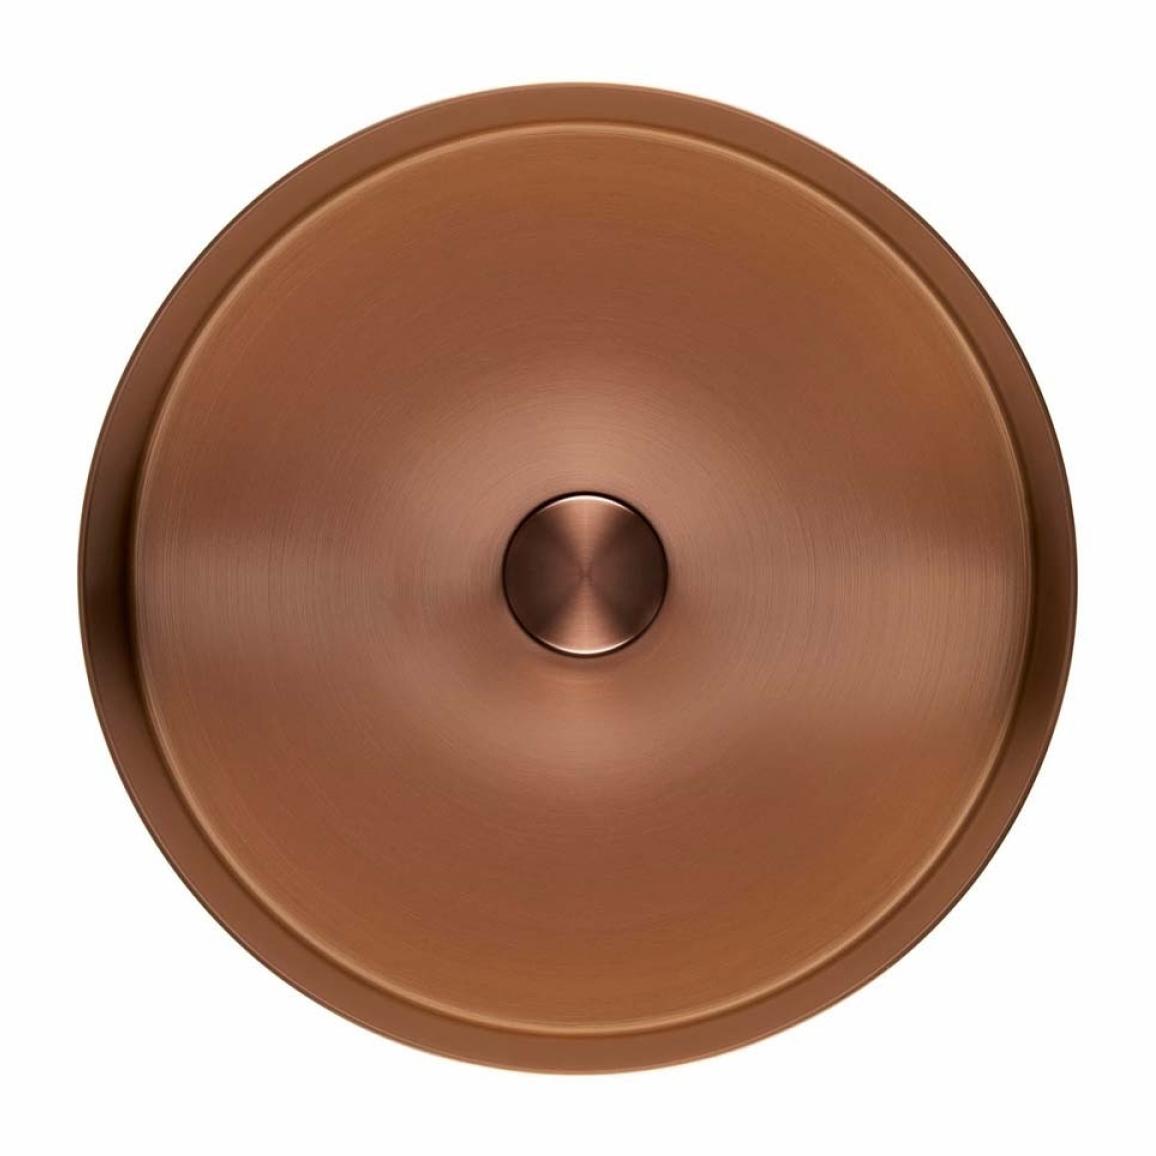 Aurum vasque à poser en Acier inoxydable, 38 x 38 x 11 cm sans trop-plein + Bonde, cuivre brossé (SATAUR3838BRG)